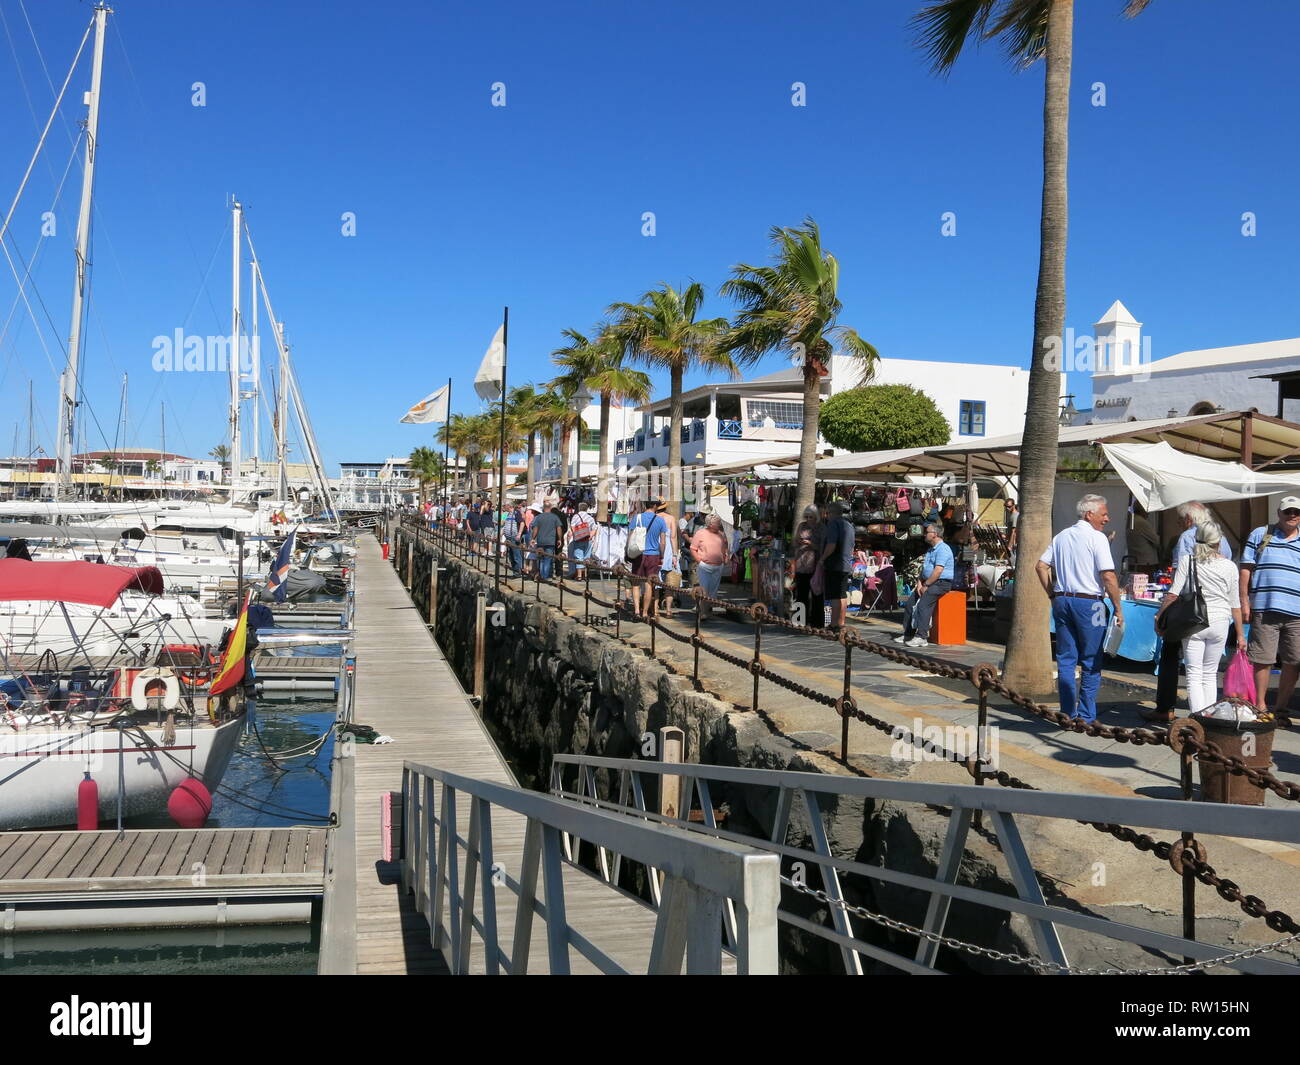 La folla di turisti che affollano il mercoledì e il sabato mattina il coloratissimo mercato di strada al Rubicon Marina, Playa Blanca, Lanzarote; Febbraio 2019 Foto Stock